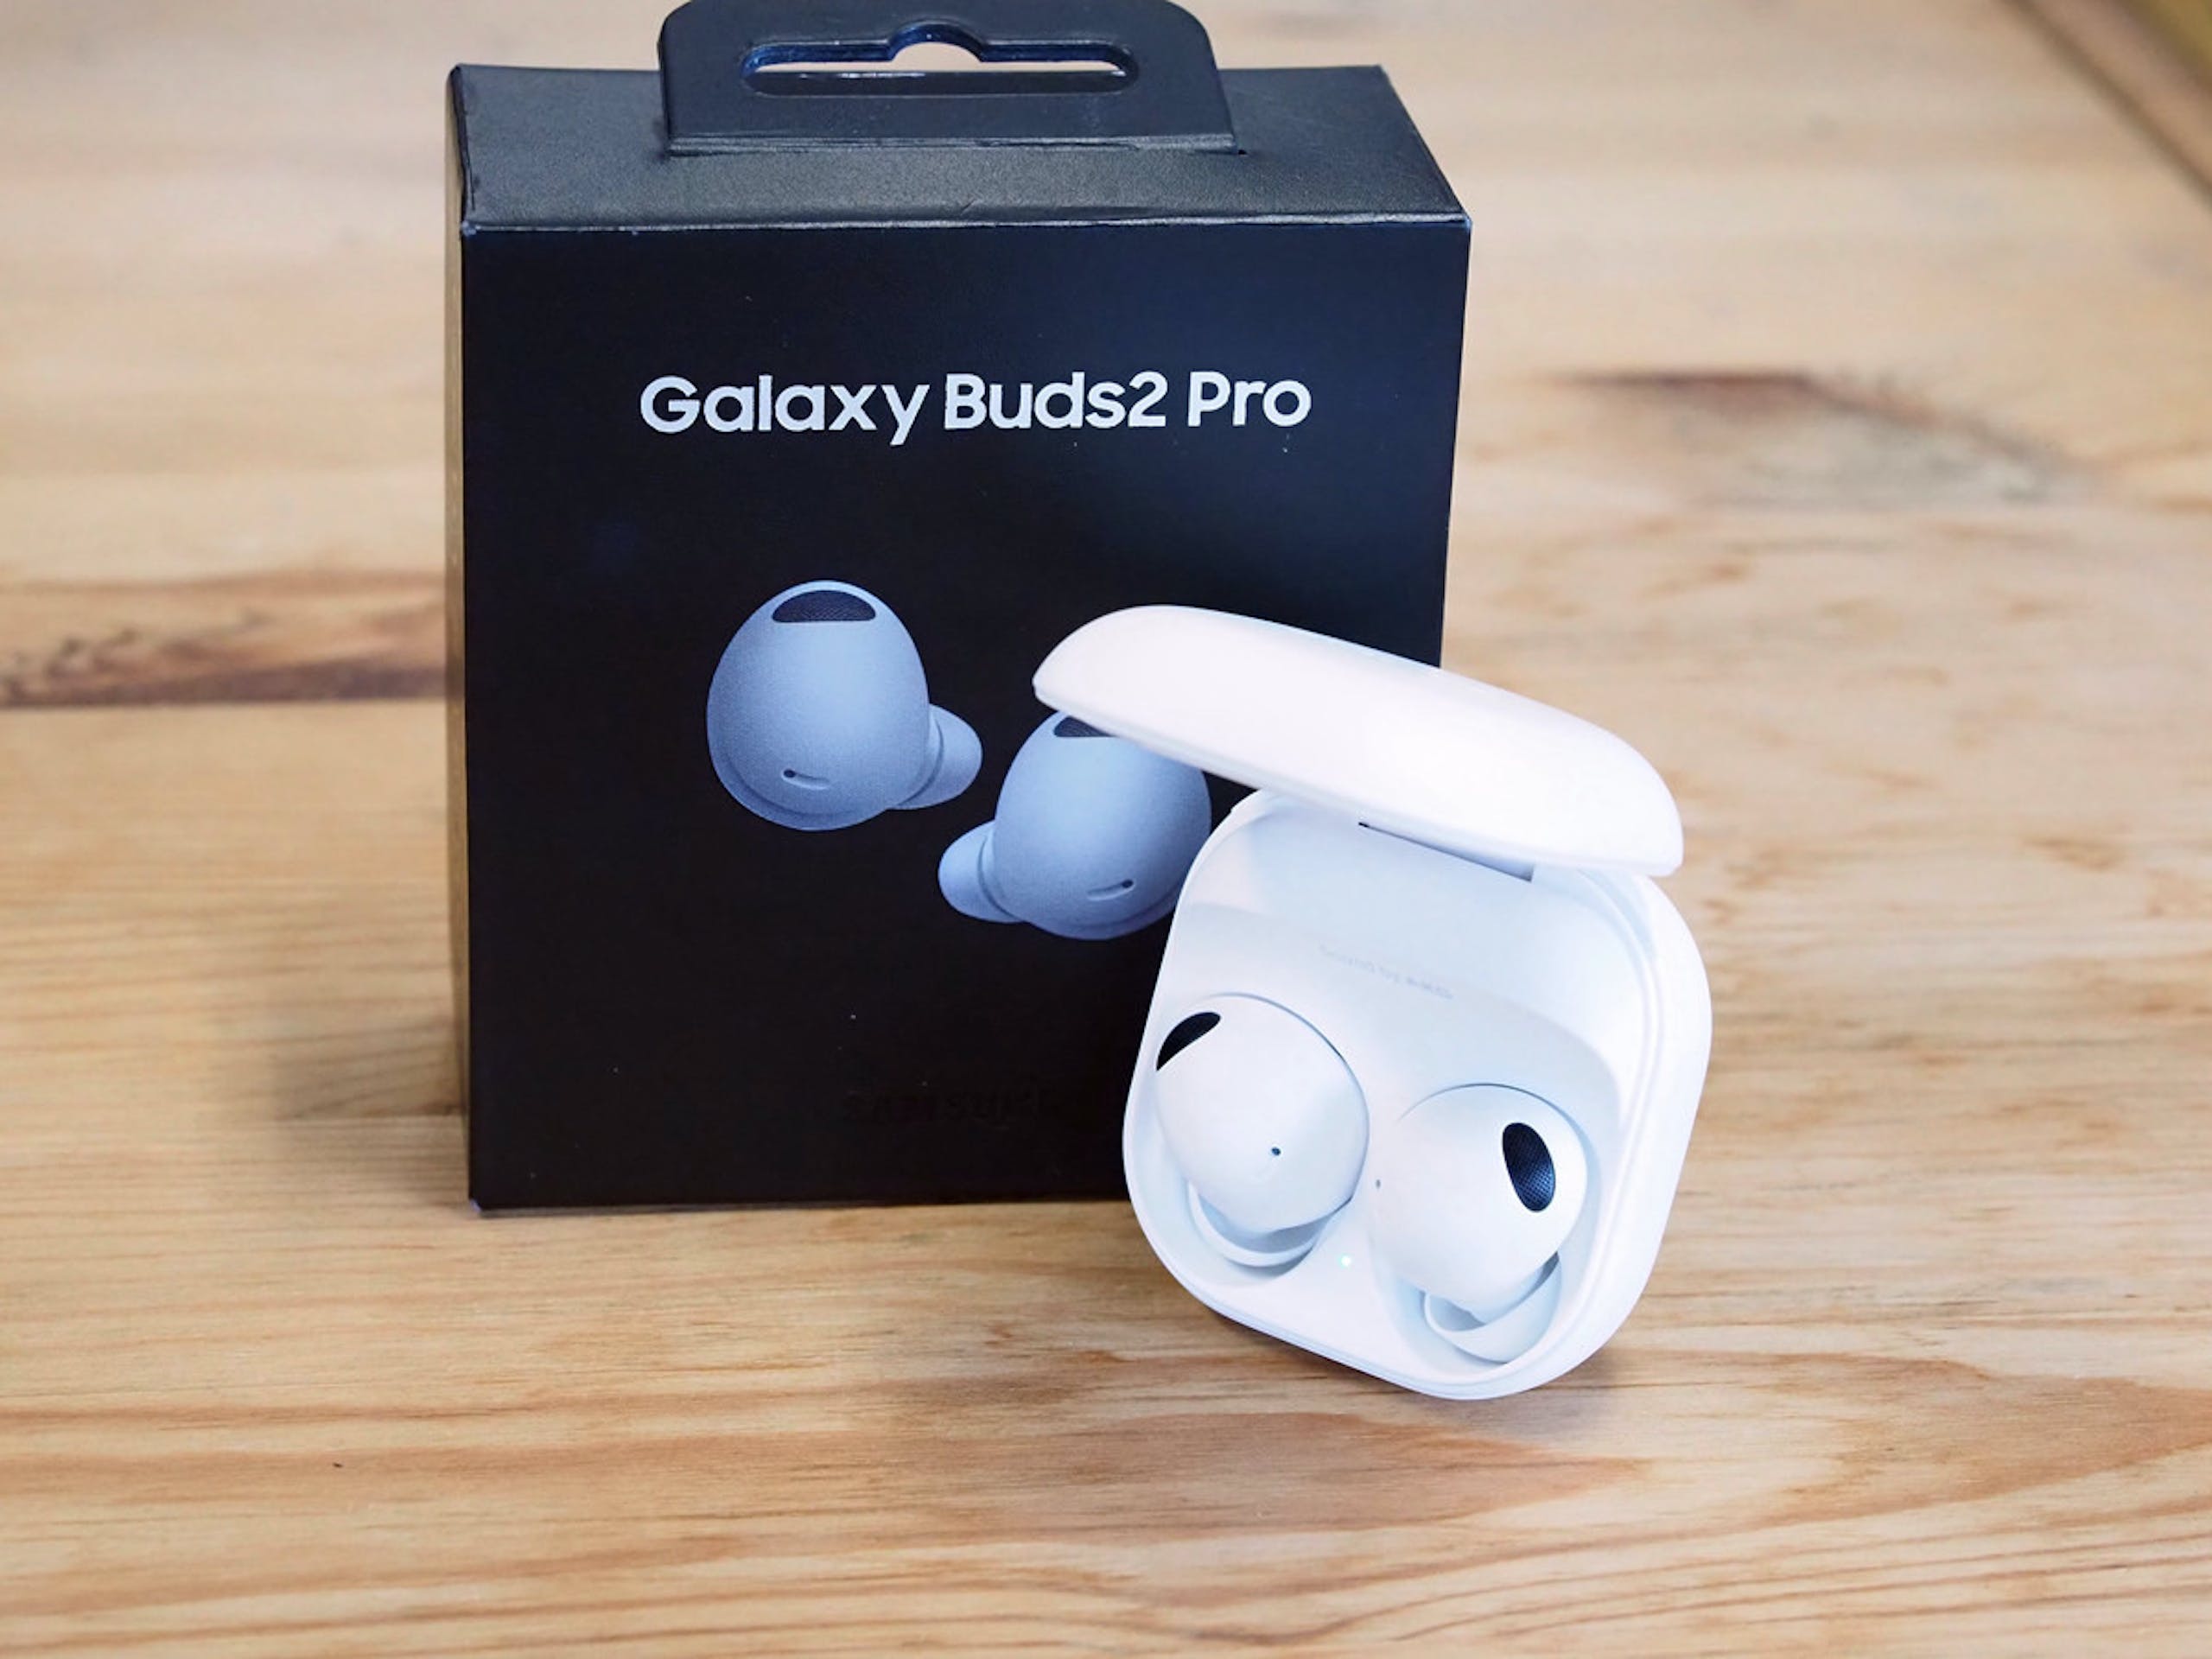 照片中提到了Galaxy Buds2 Pro，跟三星集團有關，包含了電子產品、頭戴式耳機、電子產品、產品設計、音響器材